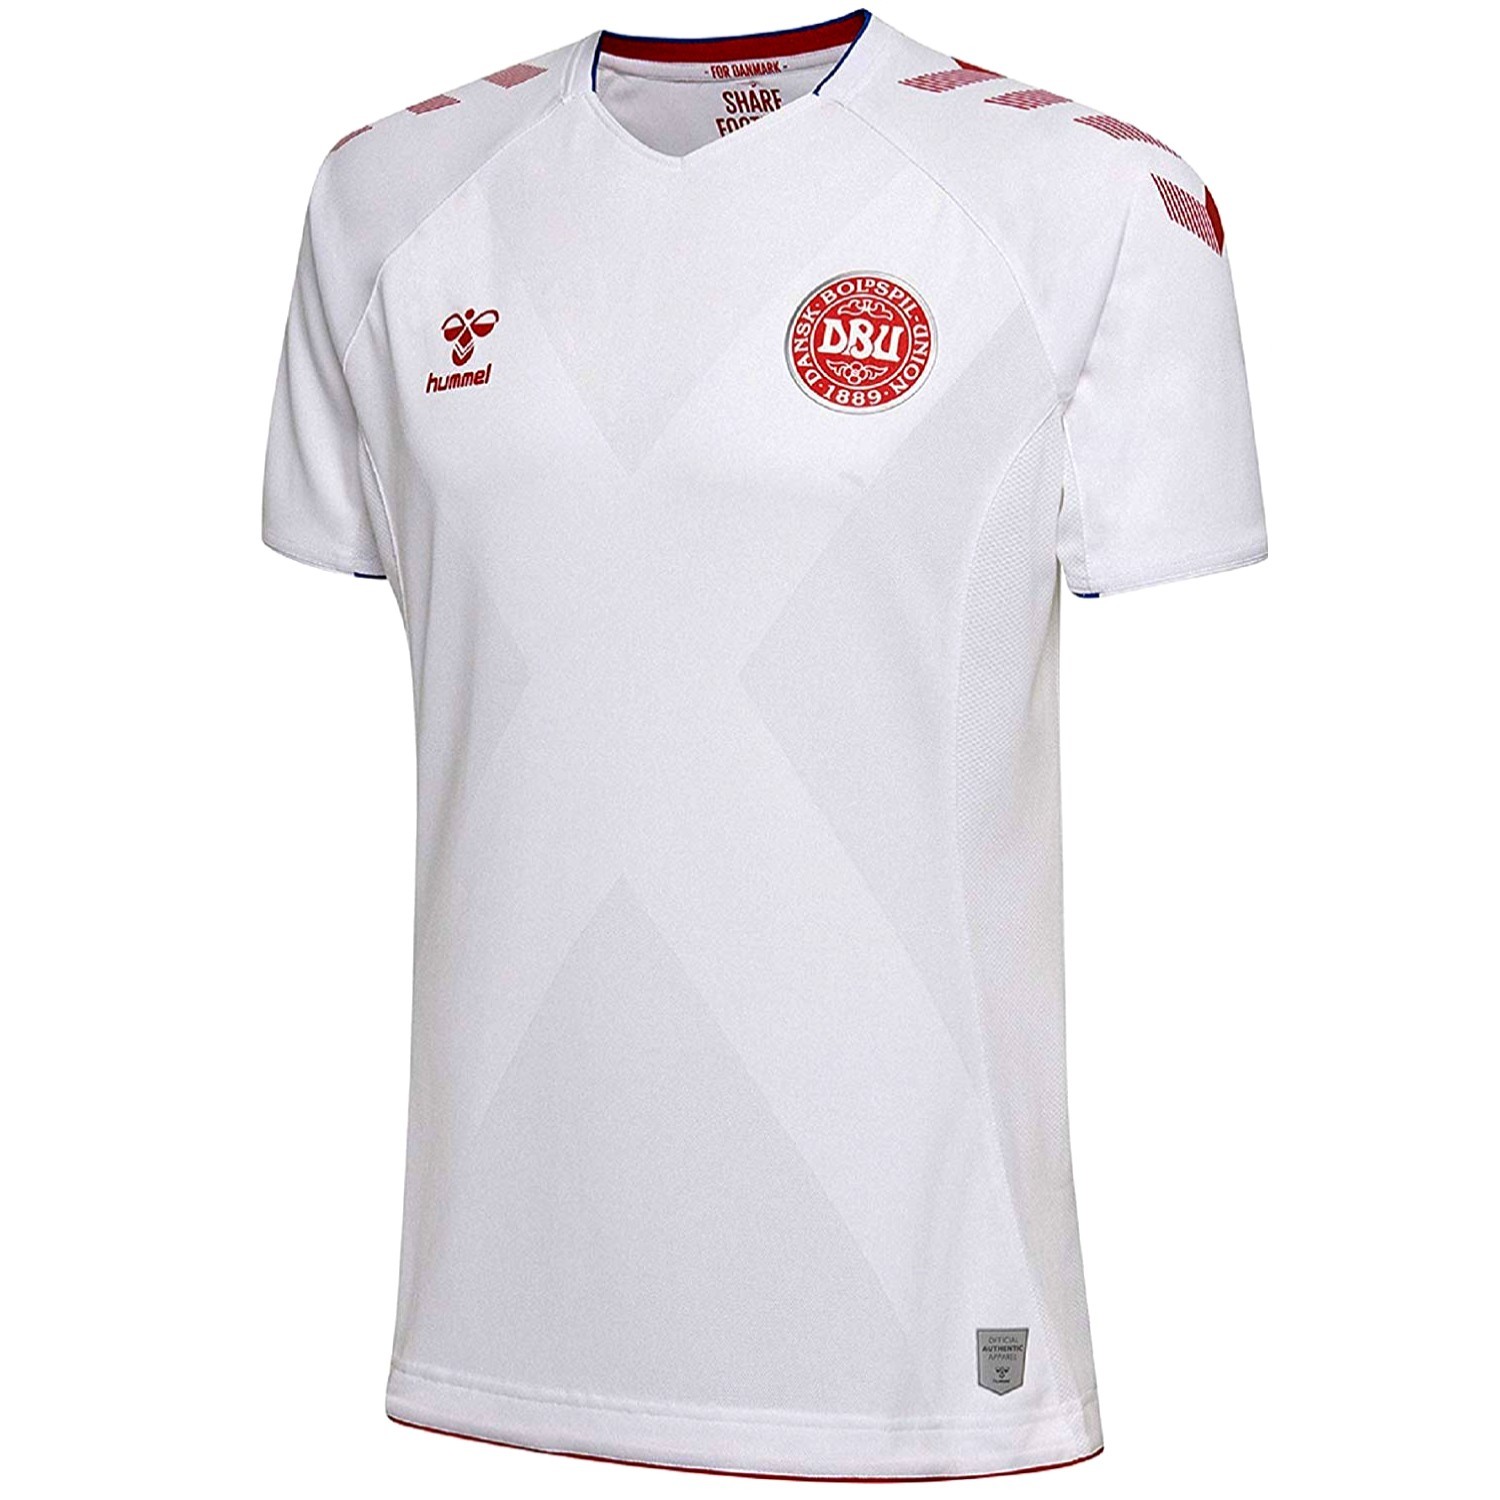 Denmark national team football shirt 2018/19 Hummel